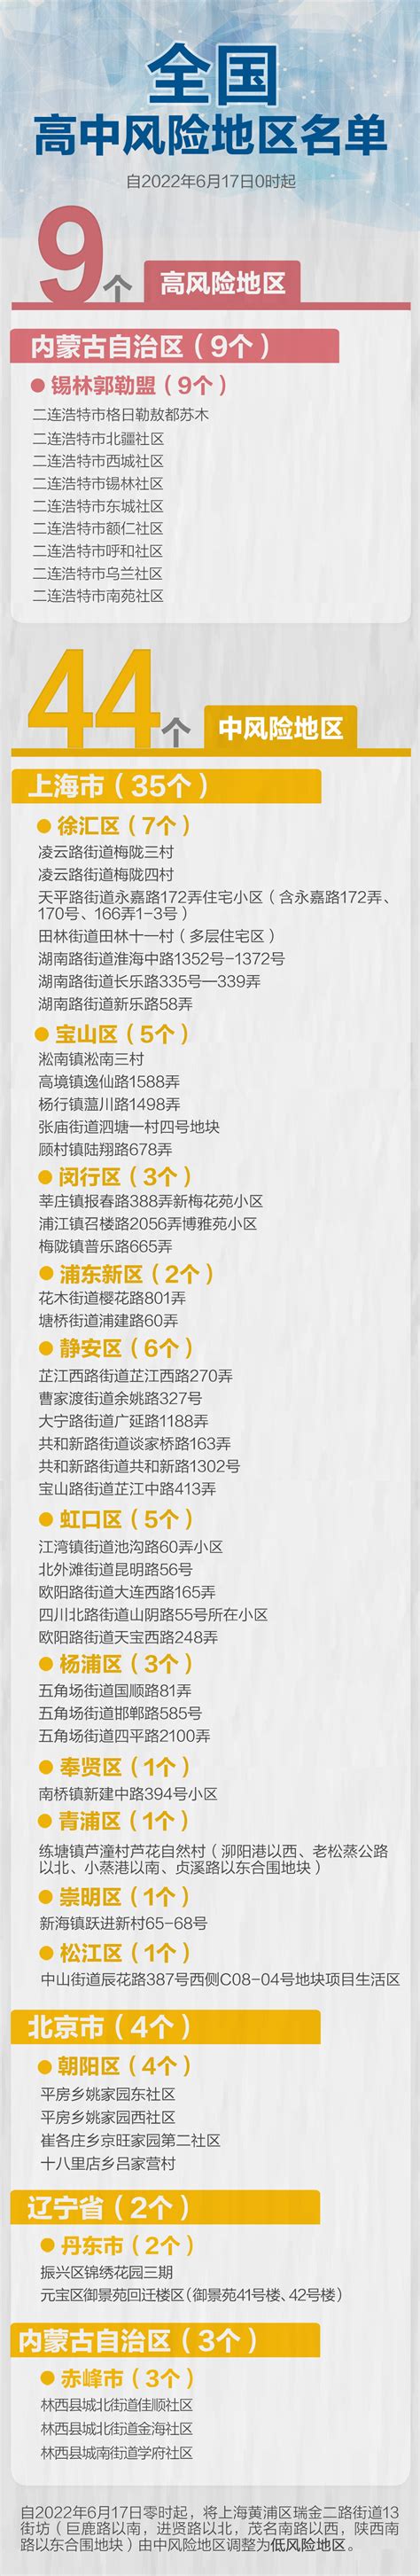 午夜更新!上海1地降级,全国现有高中风险区9+44个|瑞金|黄浦区|上海市_新浪新闻